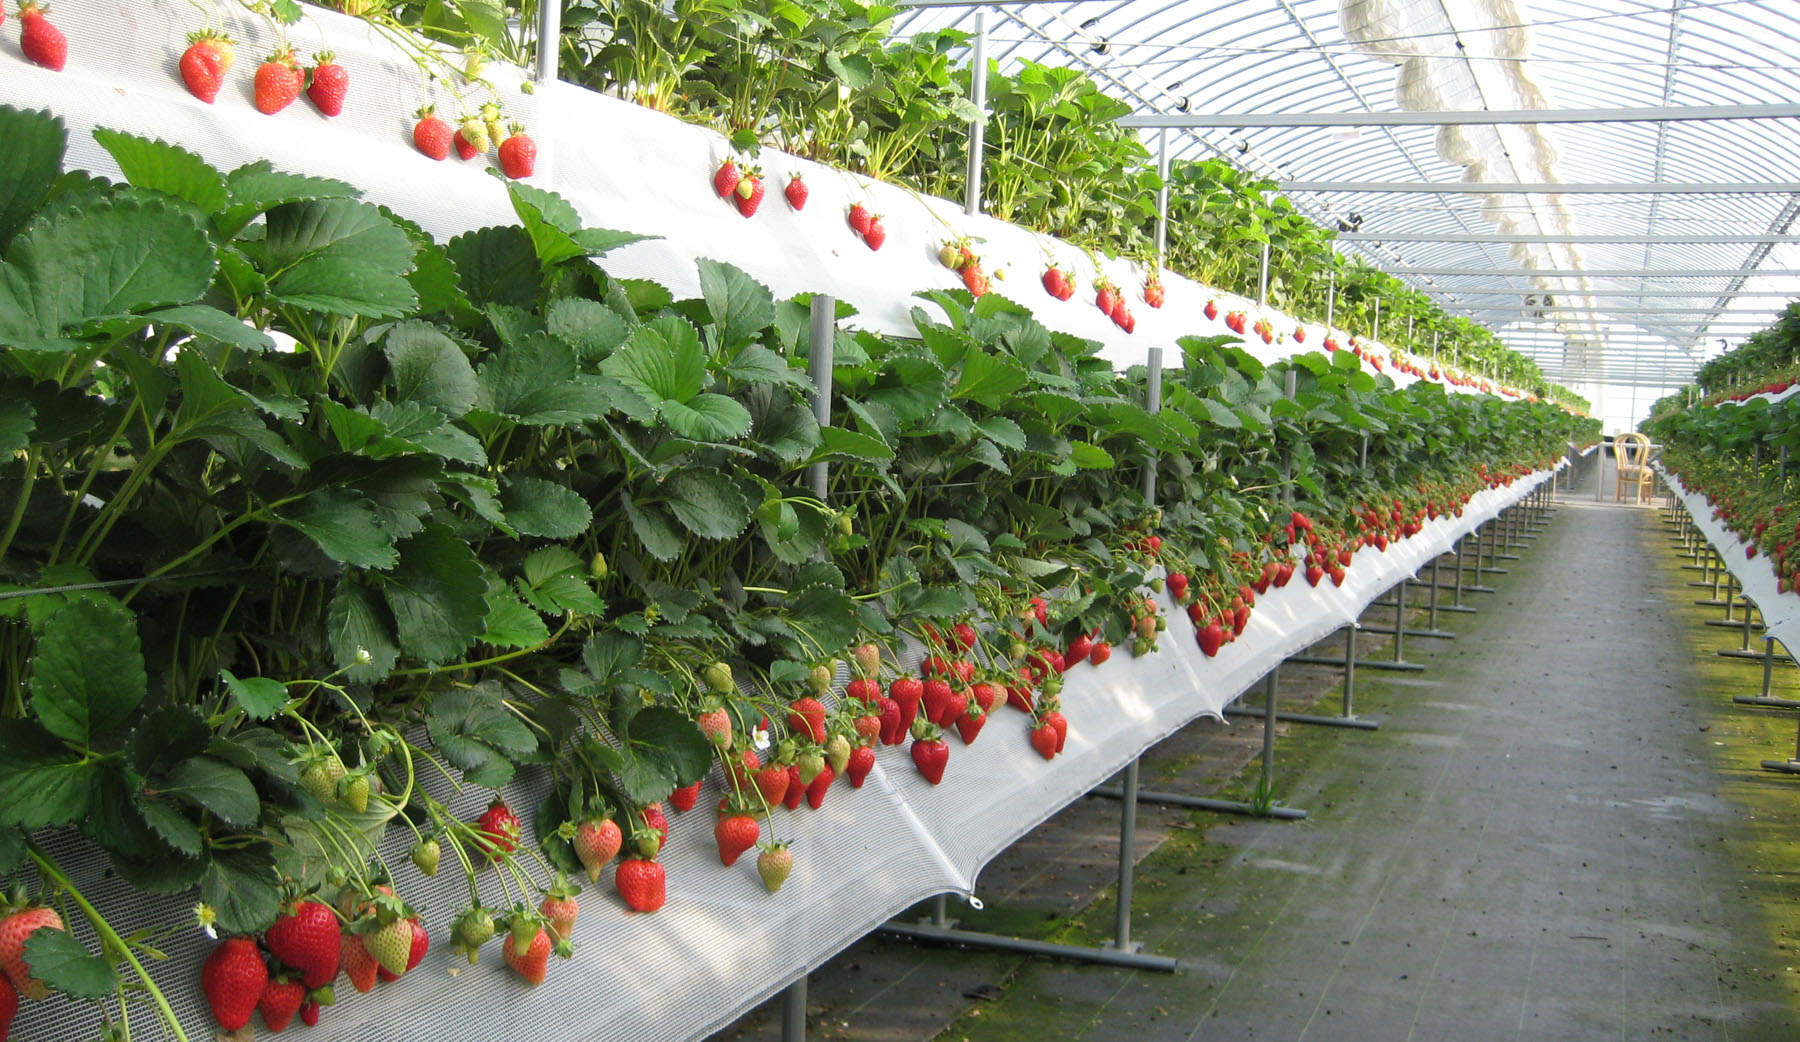 Paano palaguin ang mga strawberry sa isang greenhouse: iba't ibang pagpipilian, lumalaki sa mga kaldero at sa mga racks, mainit na mga strawberry bed